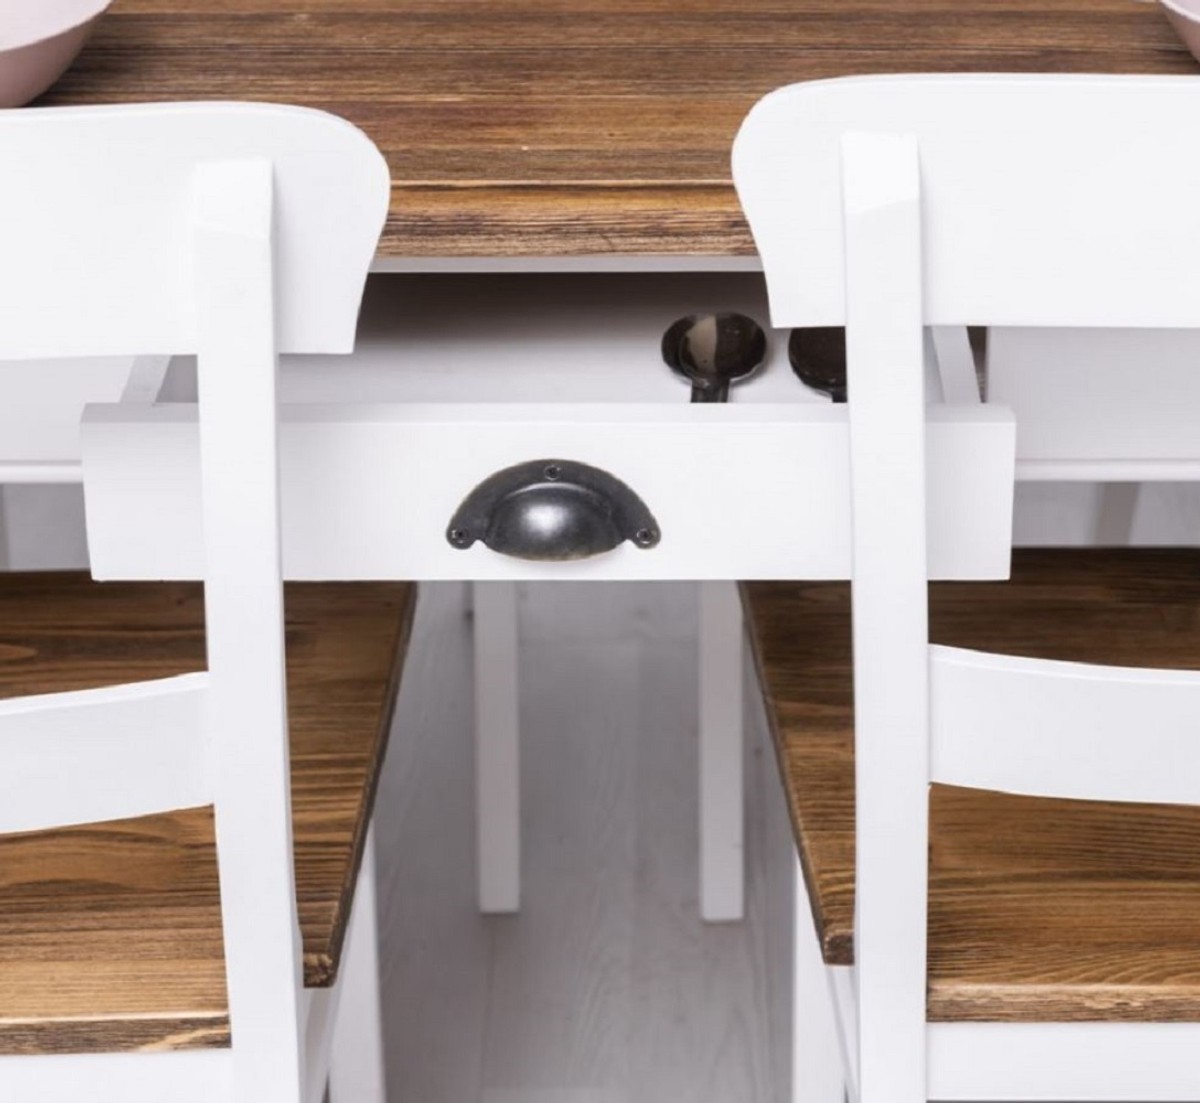 Casa Padrino set di mobili per sala da pranzo in stile country bianco /  marrone - 1 Tavolo